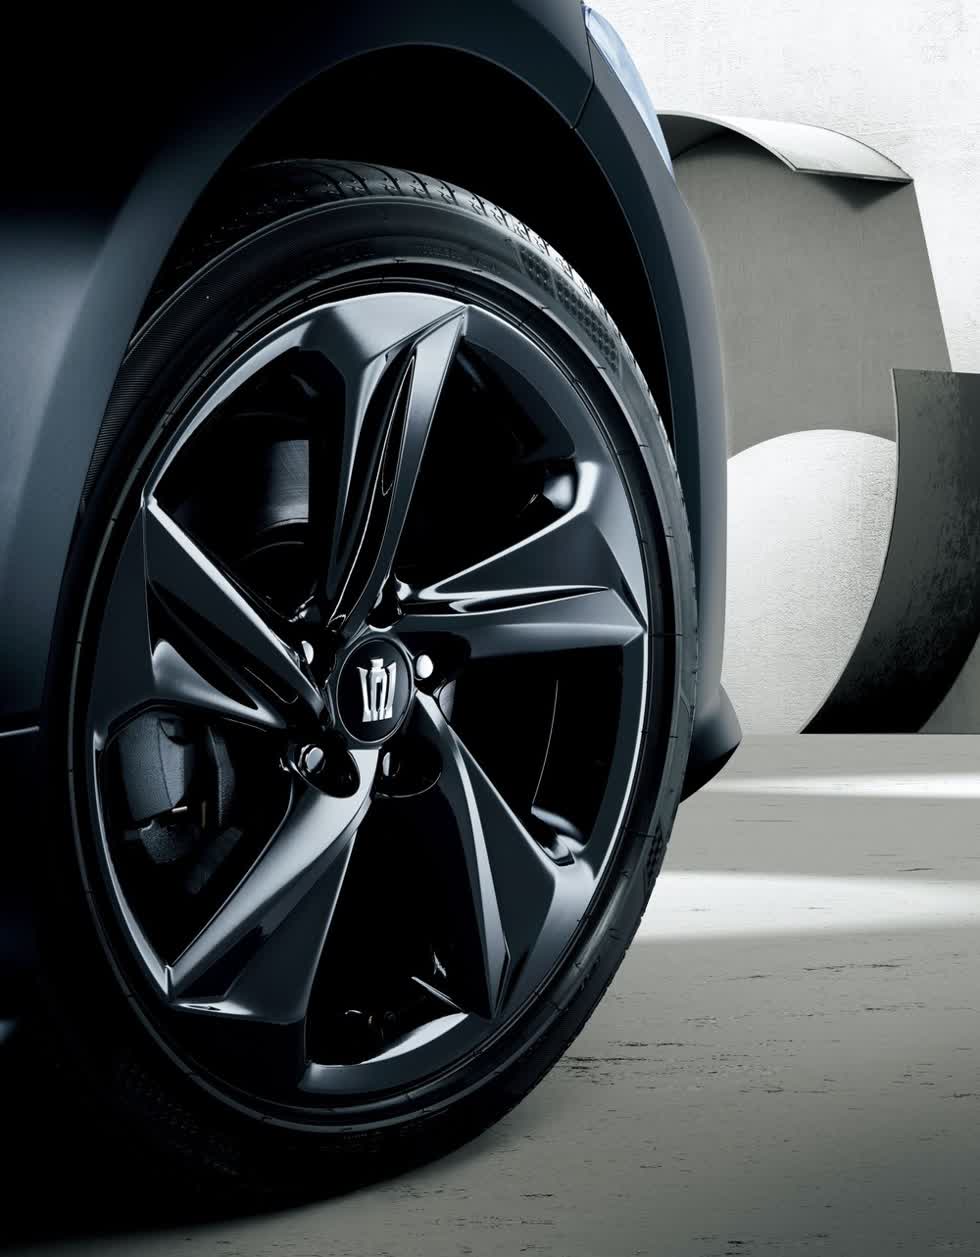 Bộ vành 18 inch màu đen của Toyota Crown Limited 2020.